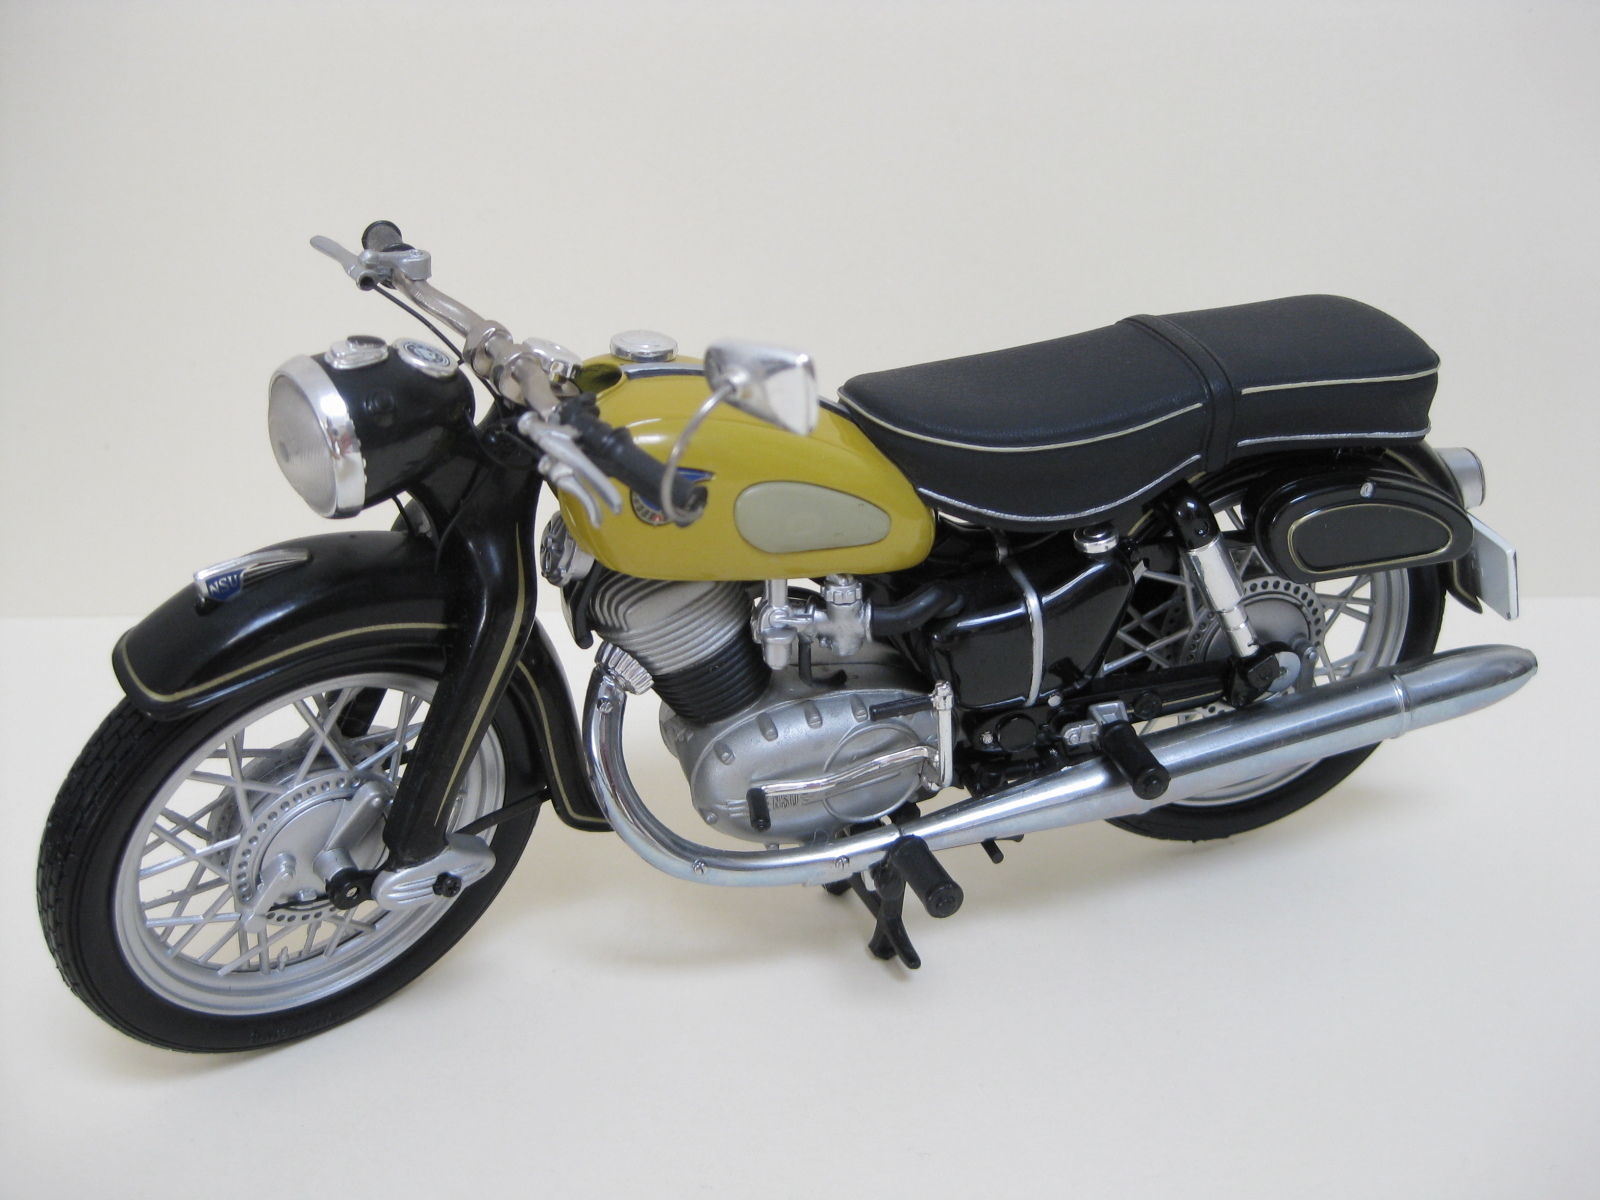 Motorrad-Modell - 1001Hobbies, der Spezialist für Motorrad-Modelle